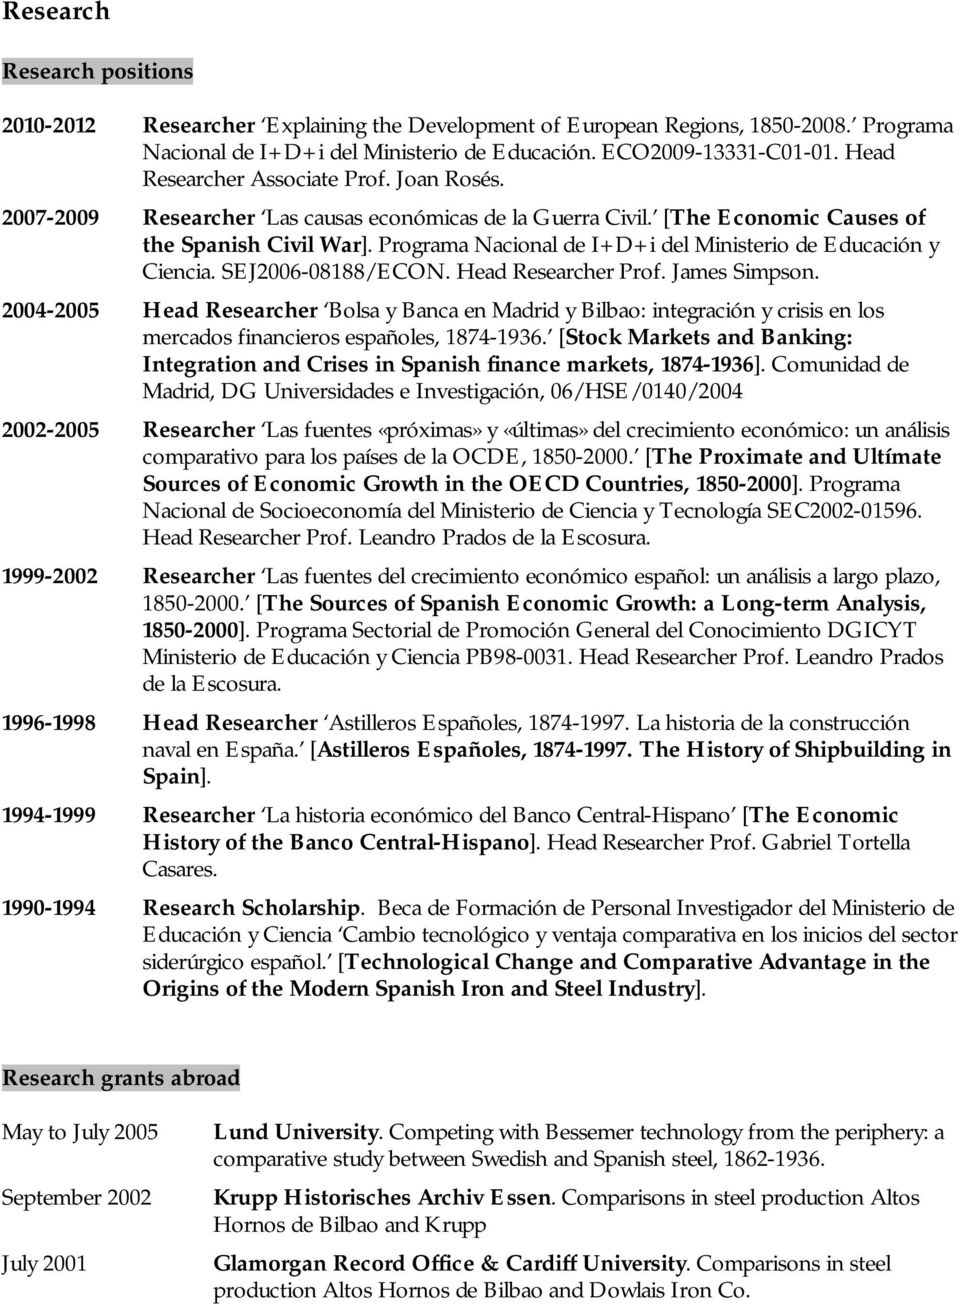 Programa Nacional de I+D+i del Ministerio de Educación y Ciencia. SEJ2006-08188/ECON. Head Researcher Prof. James Simpson.